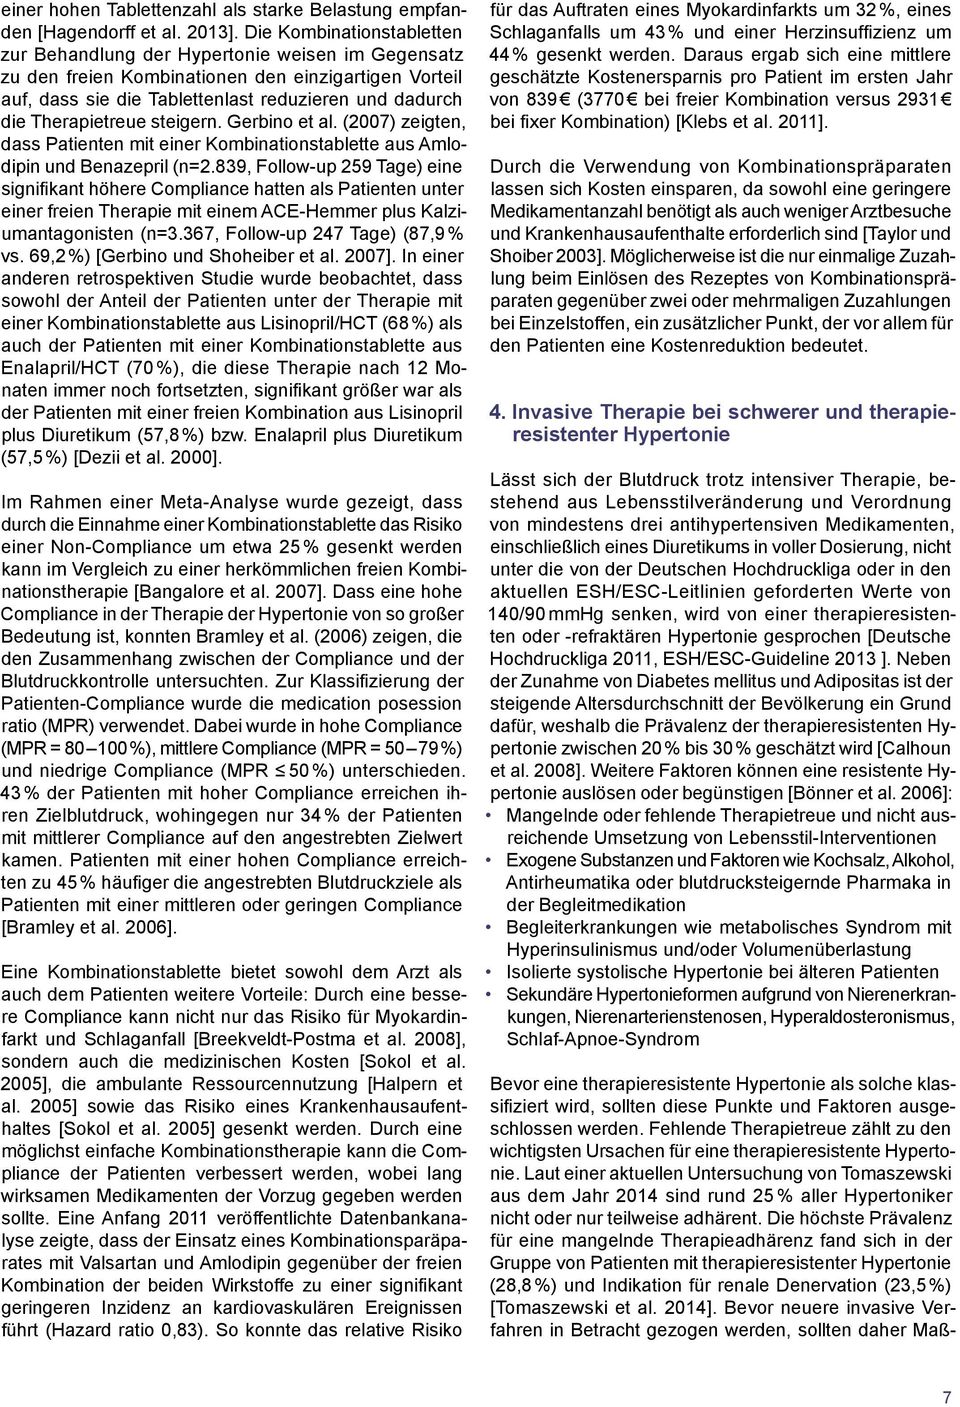 Therapietreue steigern. Gerbino et al. (2007) zeigten, dass Patienten mit einer Kombinationstablette aus Amlodipin und Benazepril (n=2.